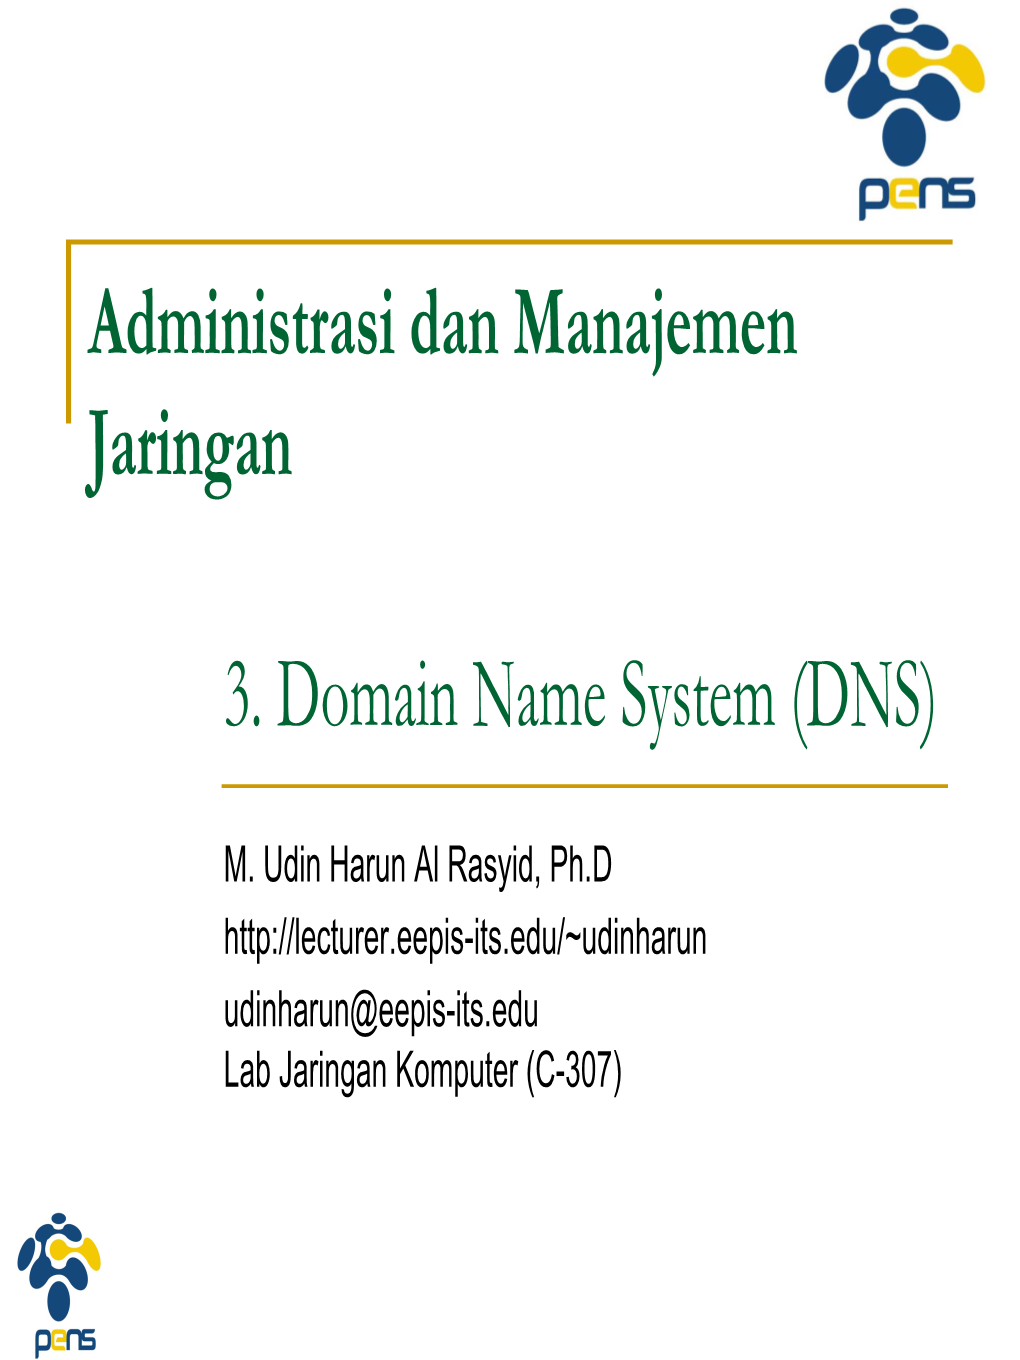 3. Domain Name System (DNS) Administrasi Dan Manajemen